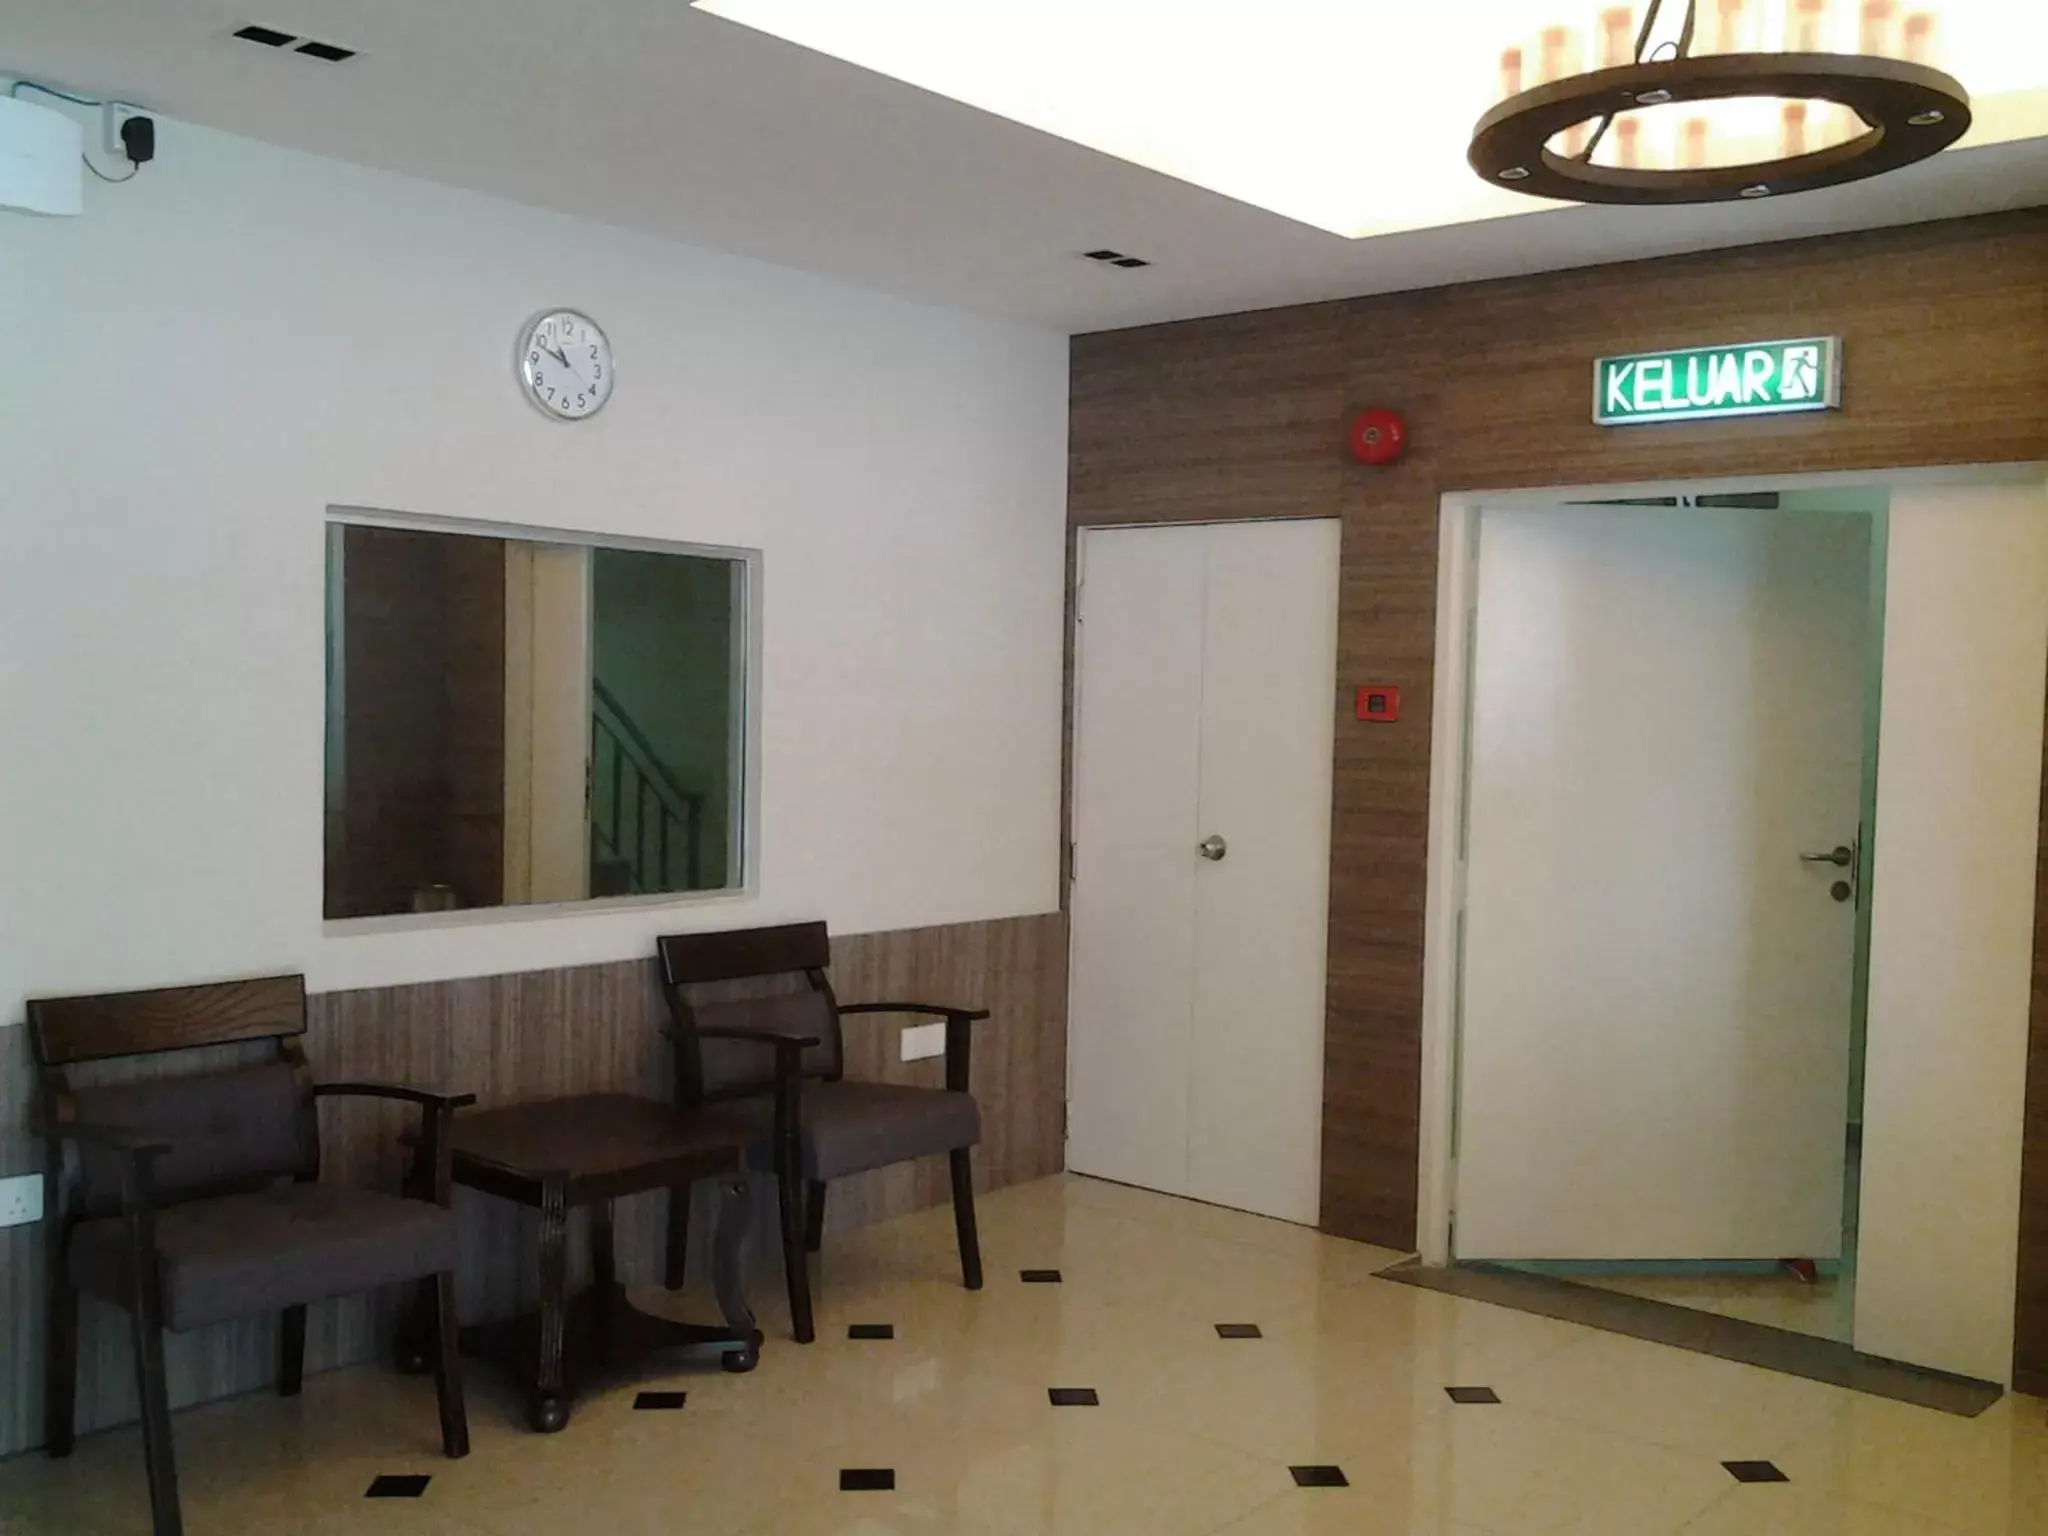 Area and facilities in Suria Seremban Hotel